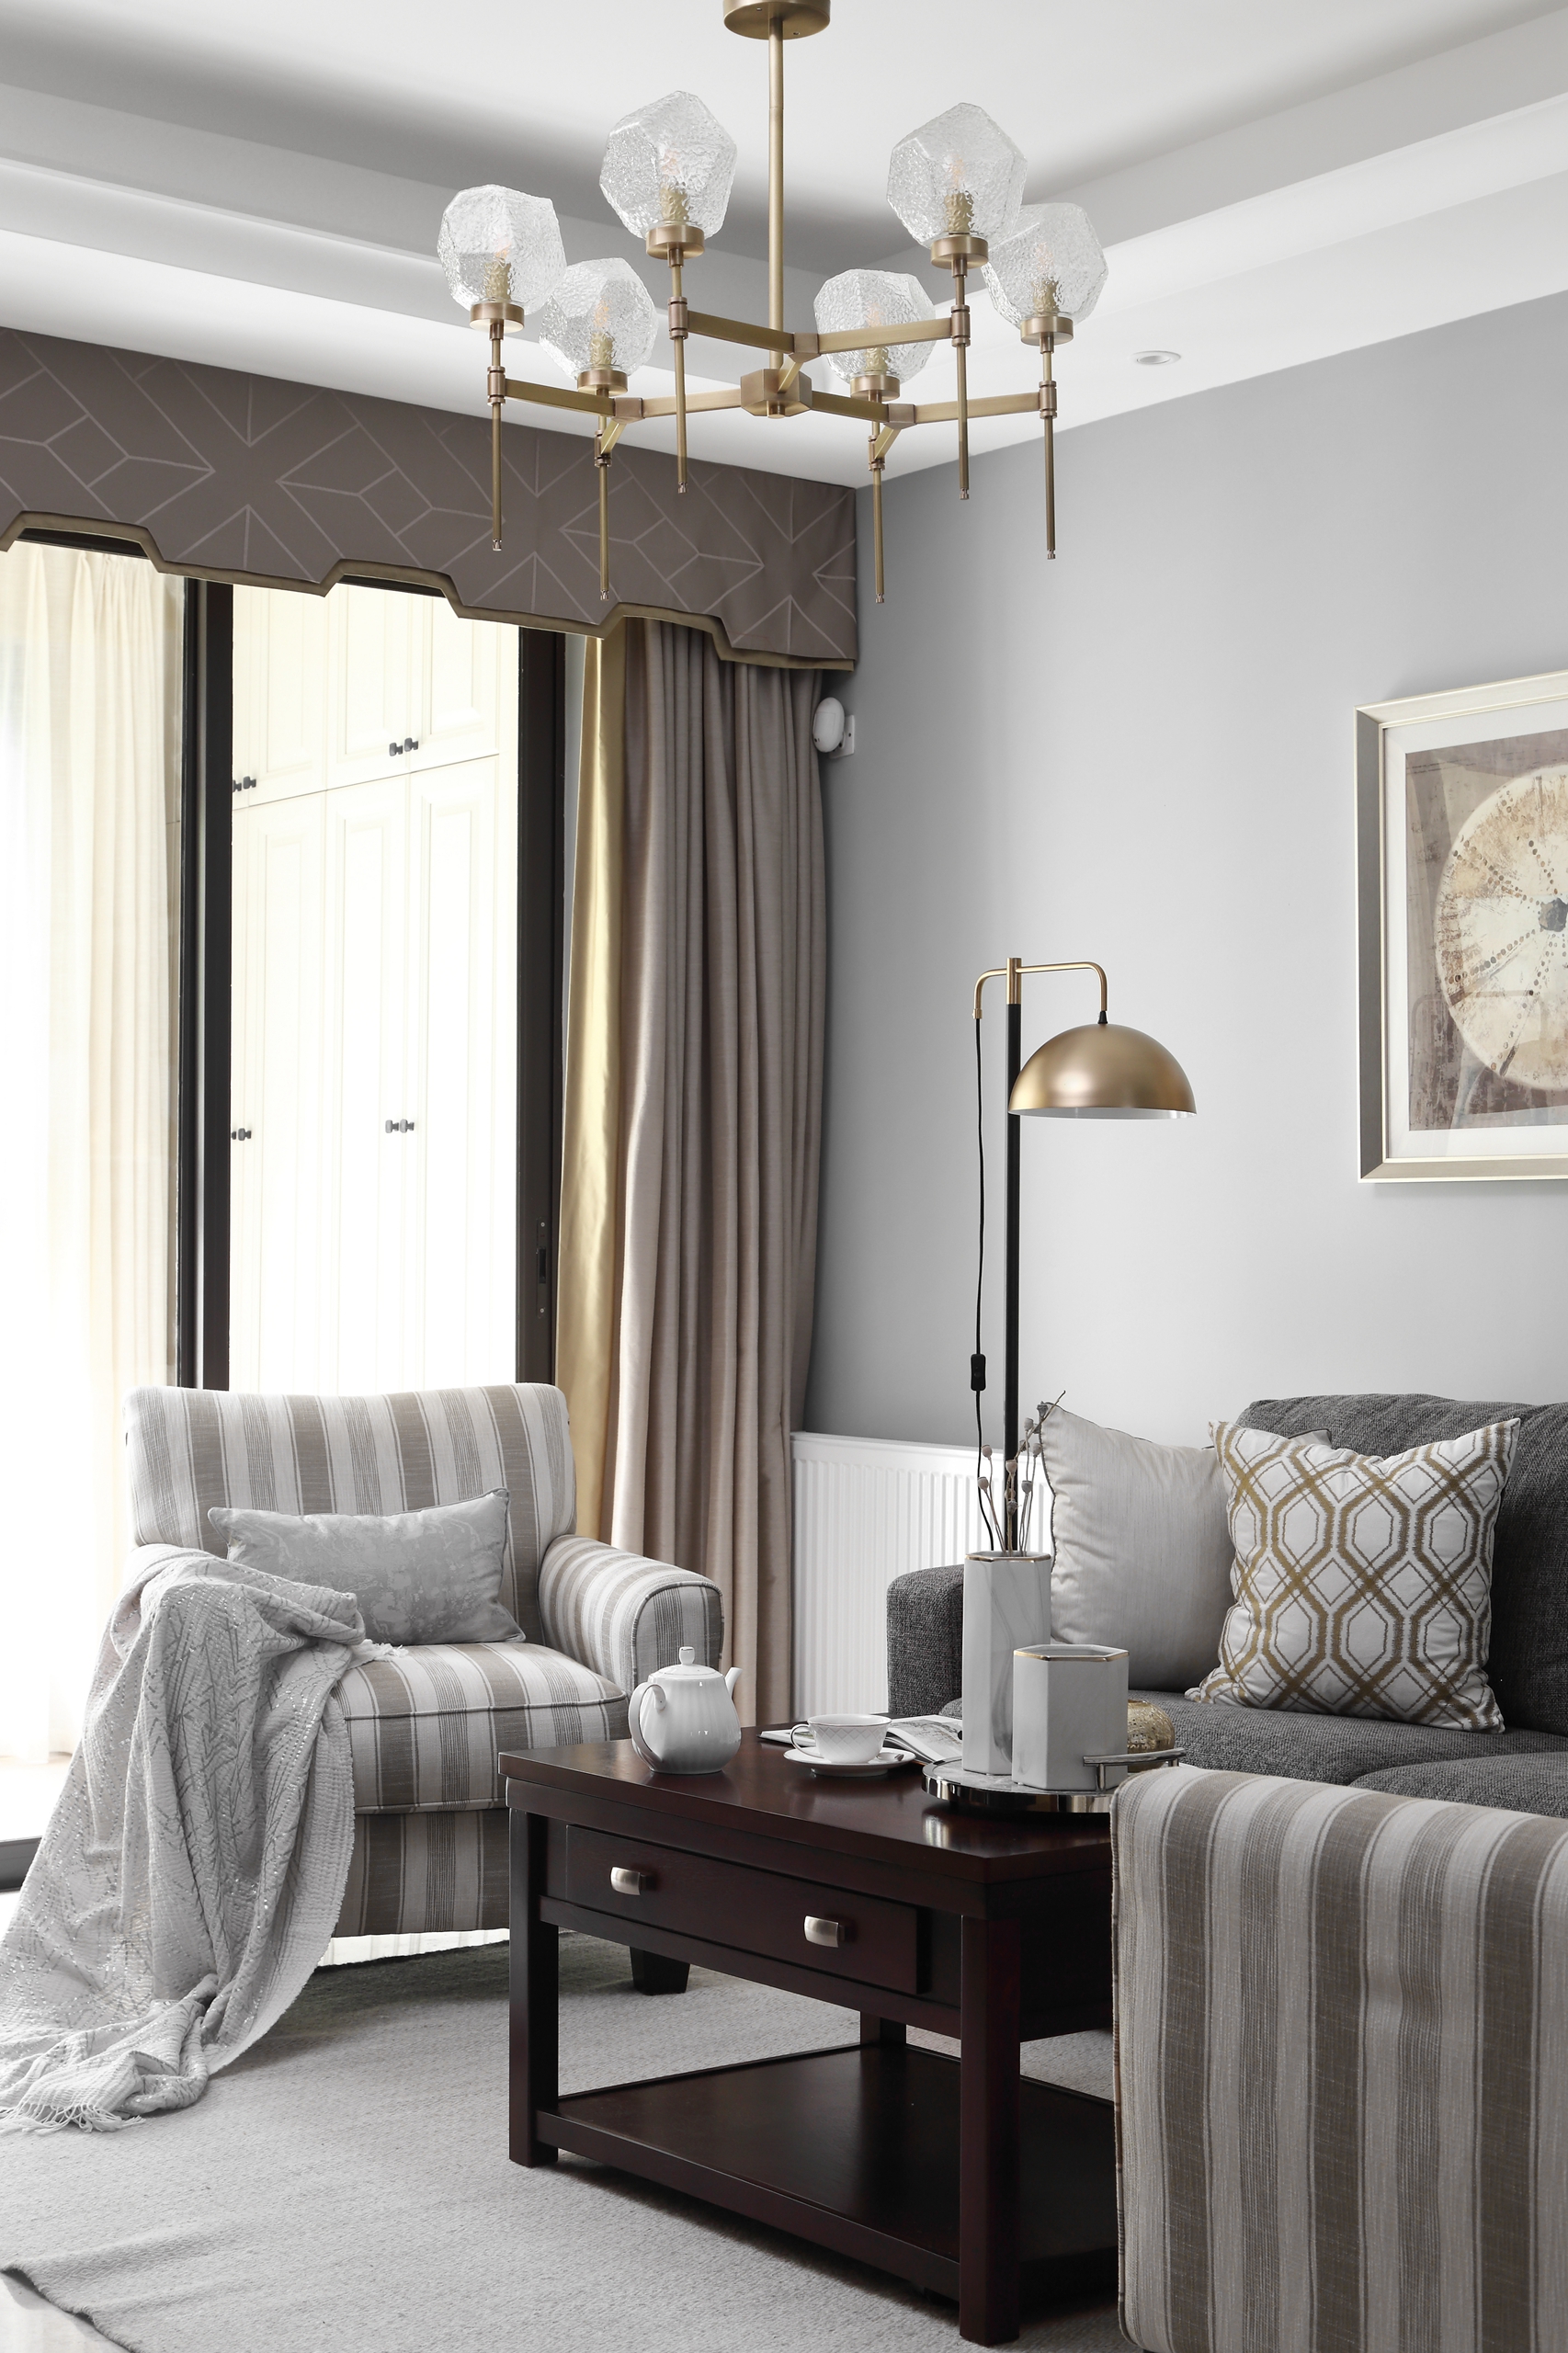 客厅窗帘1装修效果图质朴99平简约三居客厅案例图现代简约客厅设计图片赏析